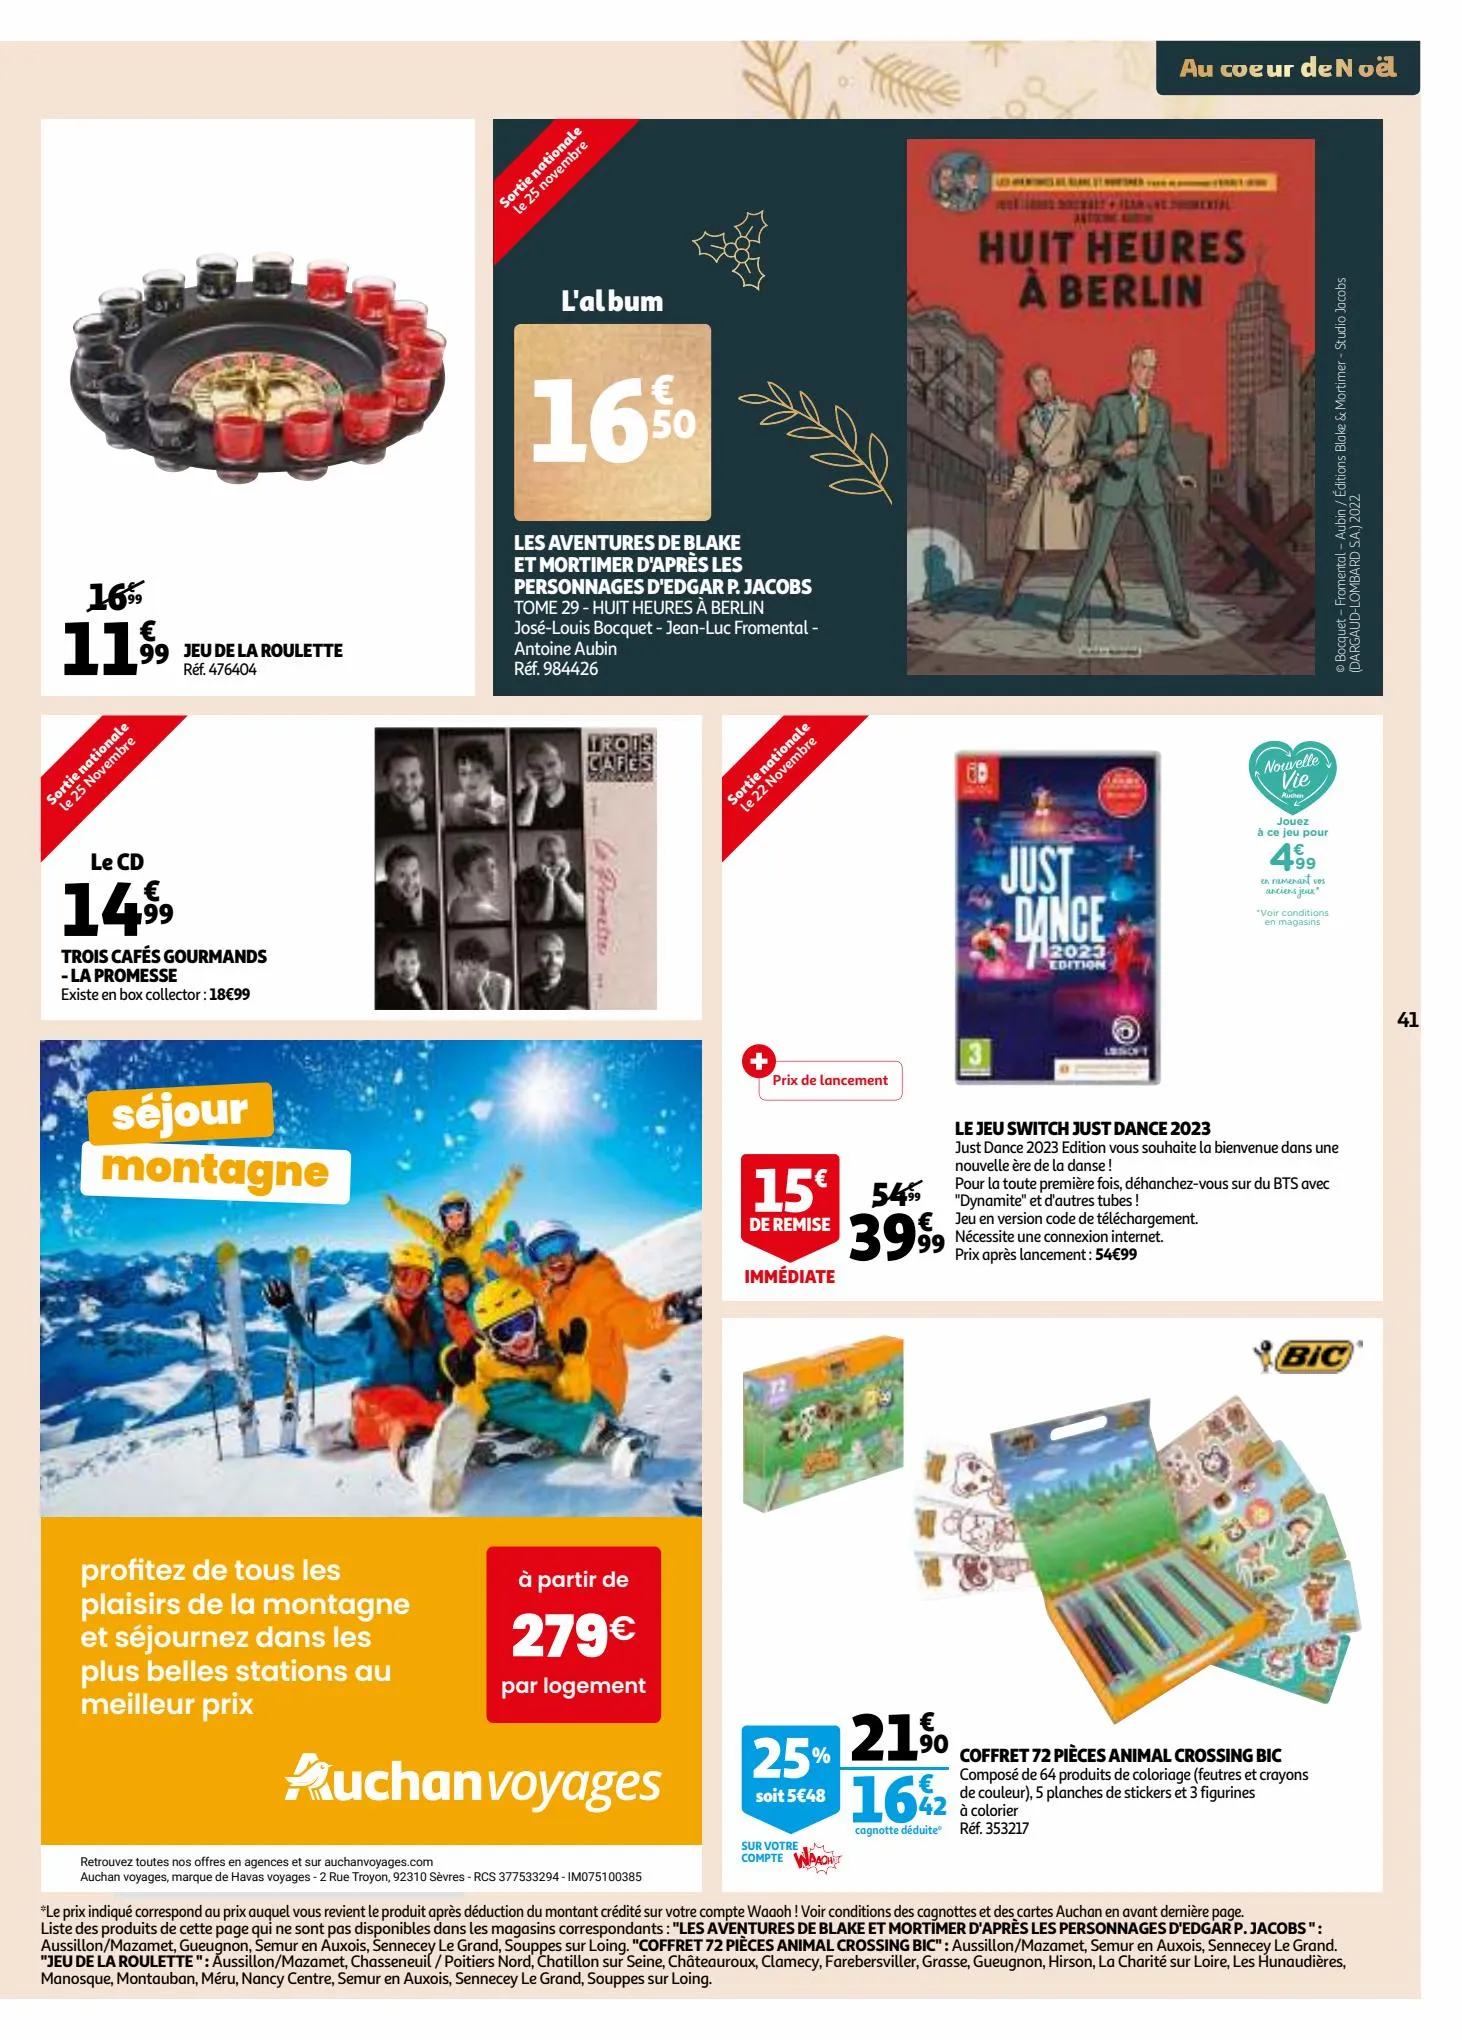 Catalogue 25 jours Auchan, page 00041